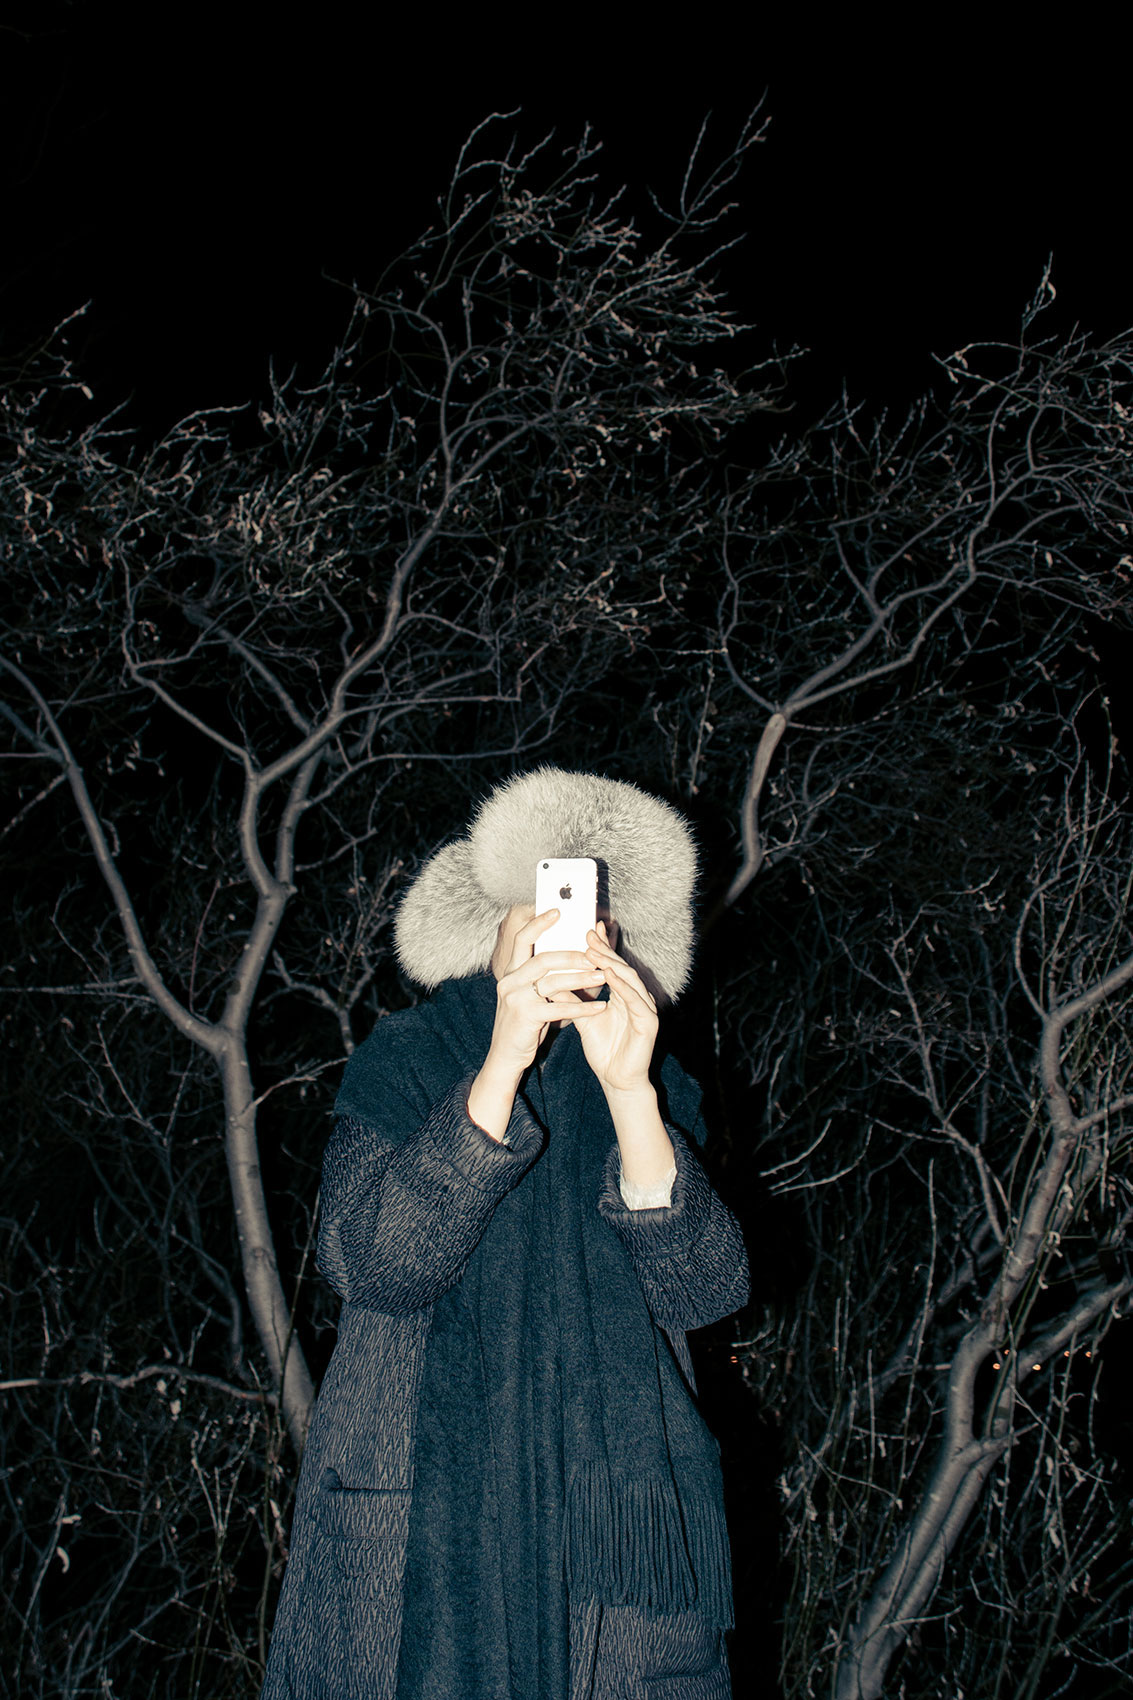 Kobieta w ciemnościach trzyma telefon przy twarzy.